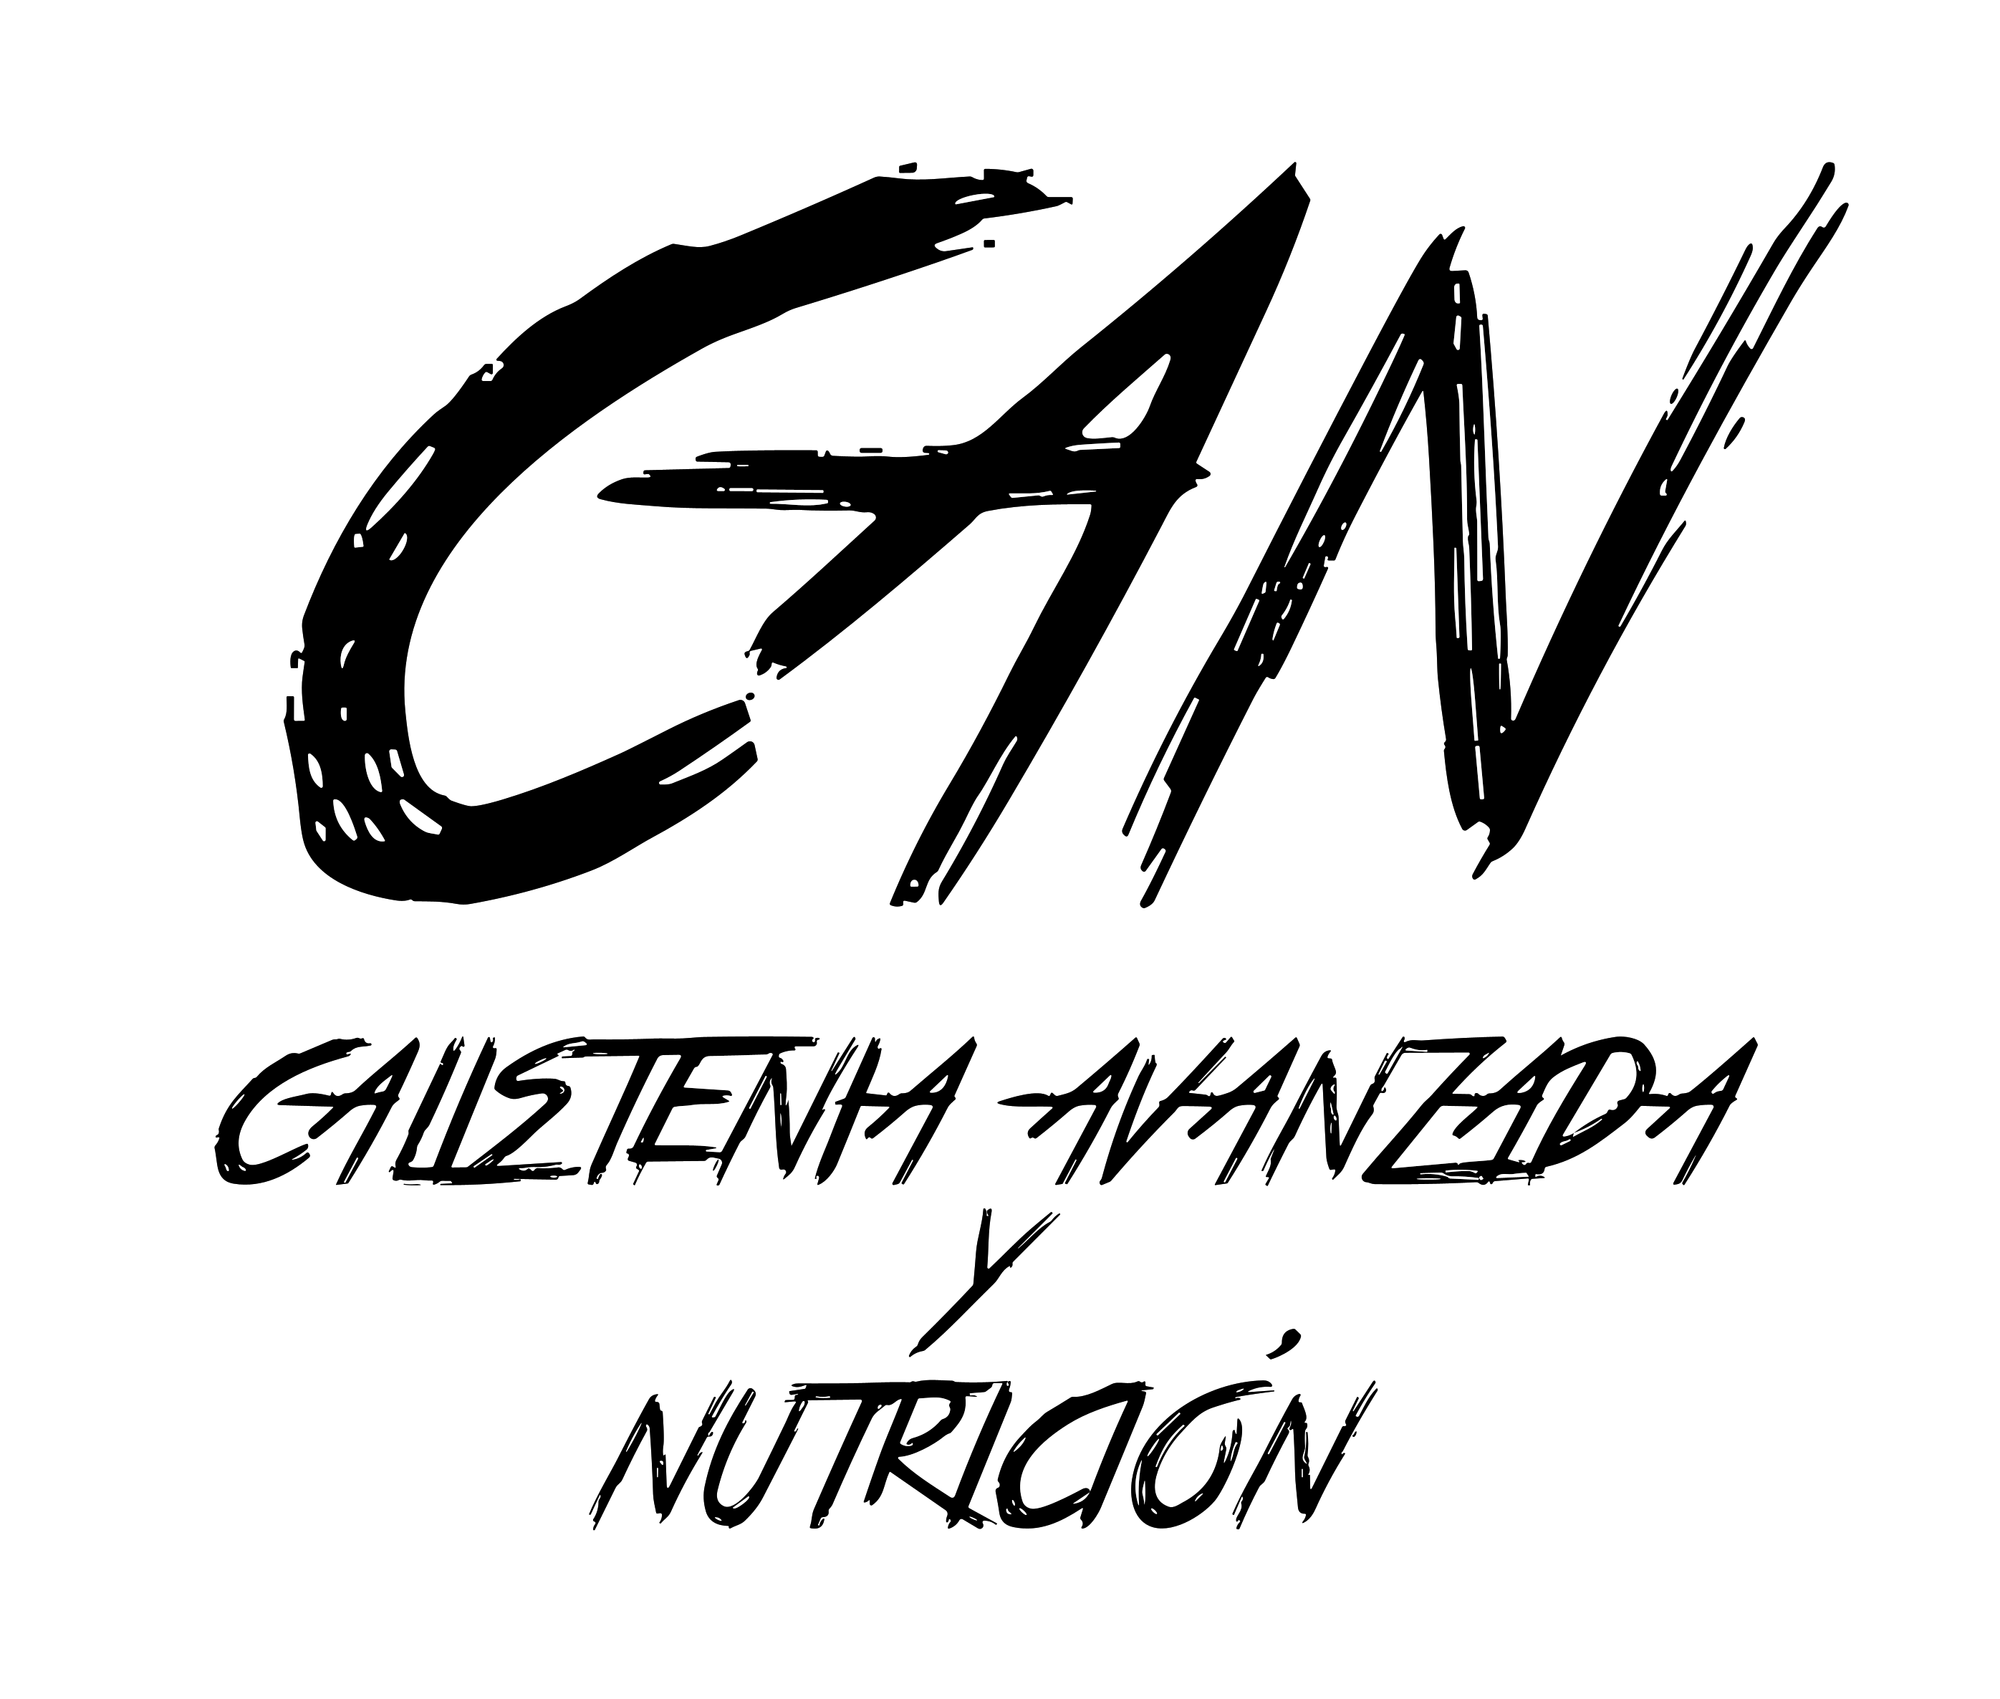 CAN - Calistenia Avanzada y Nutrición